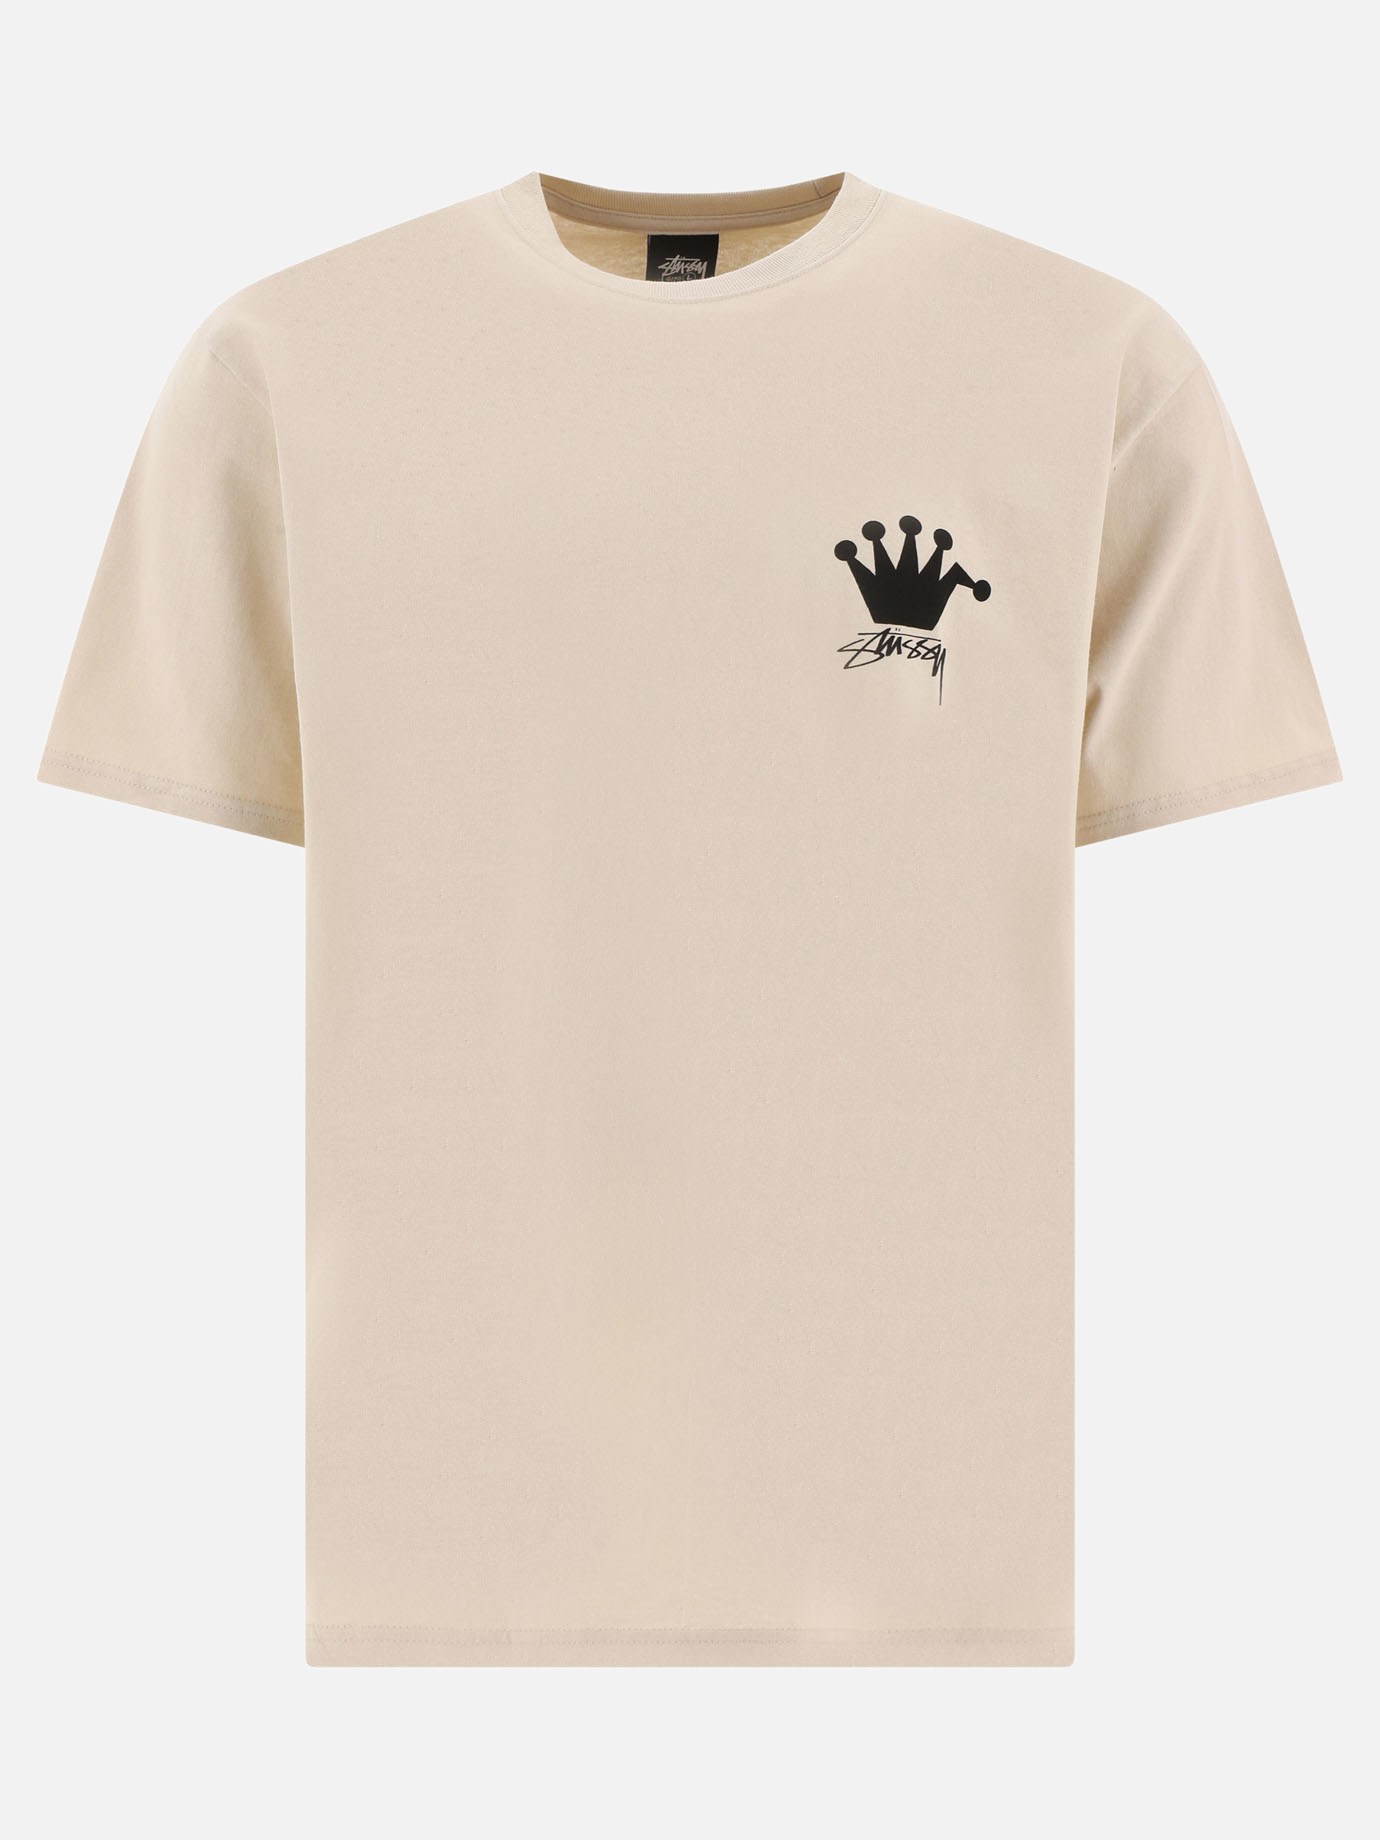 T-shirt  LB Crown by Stüssy - 0